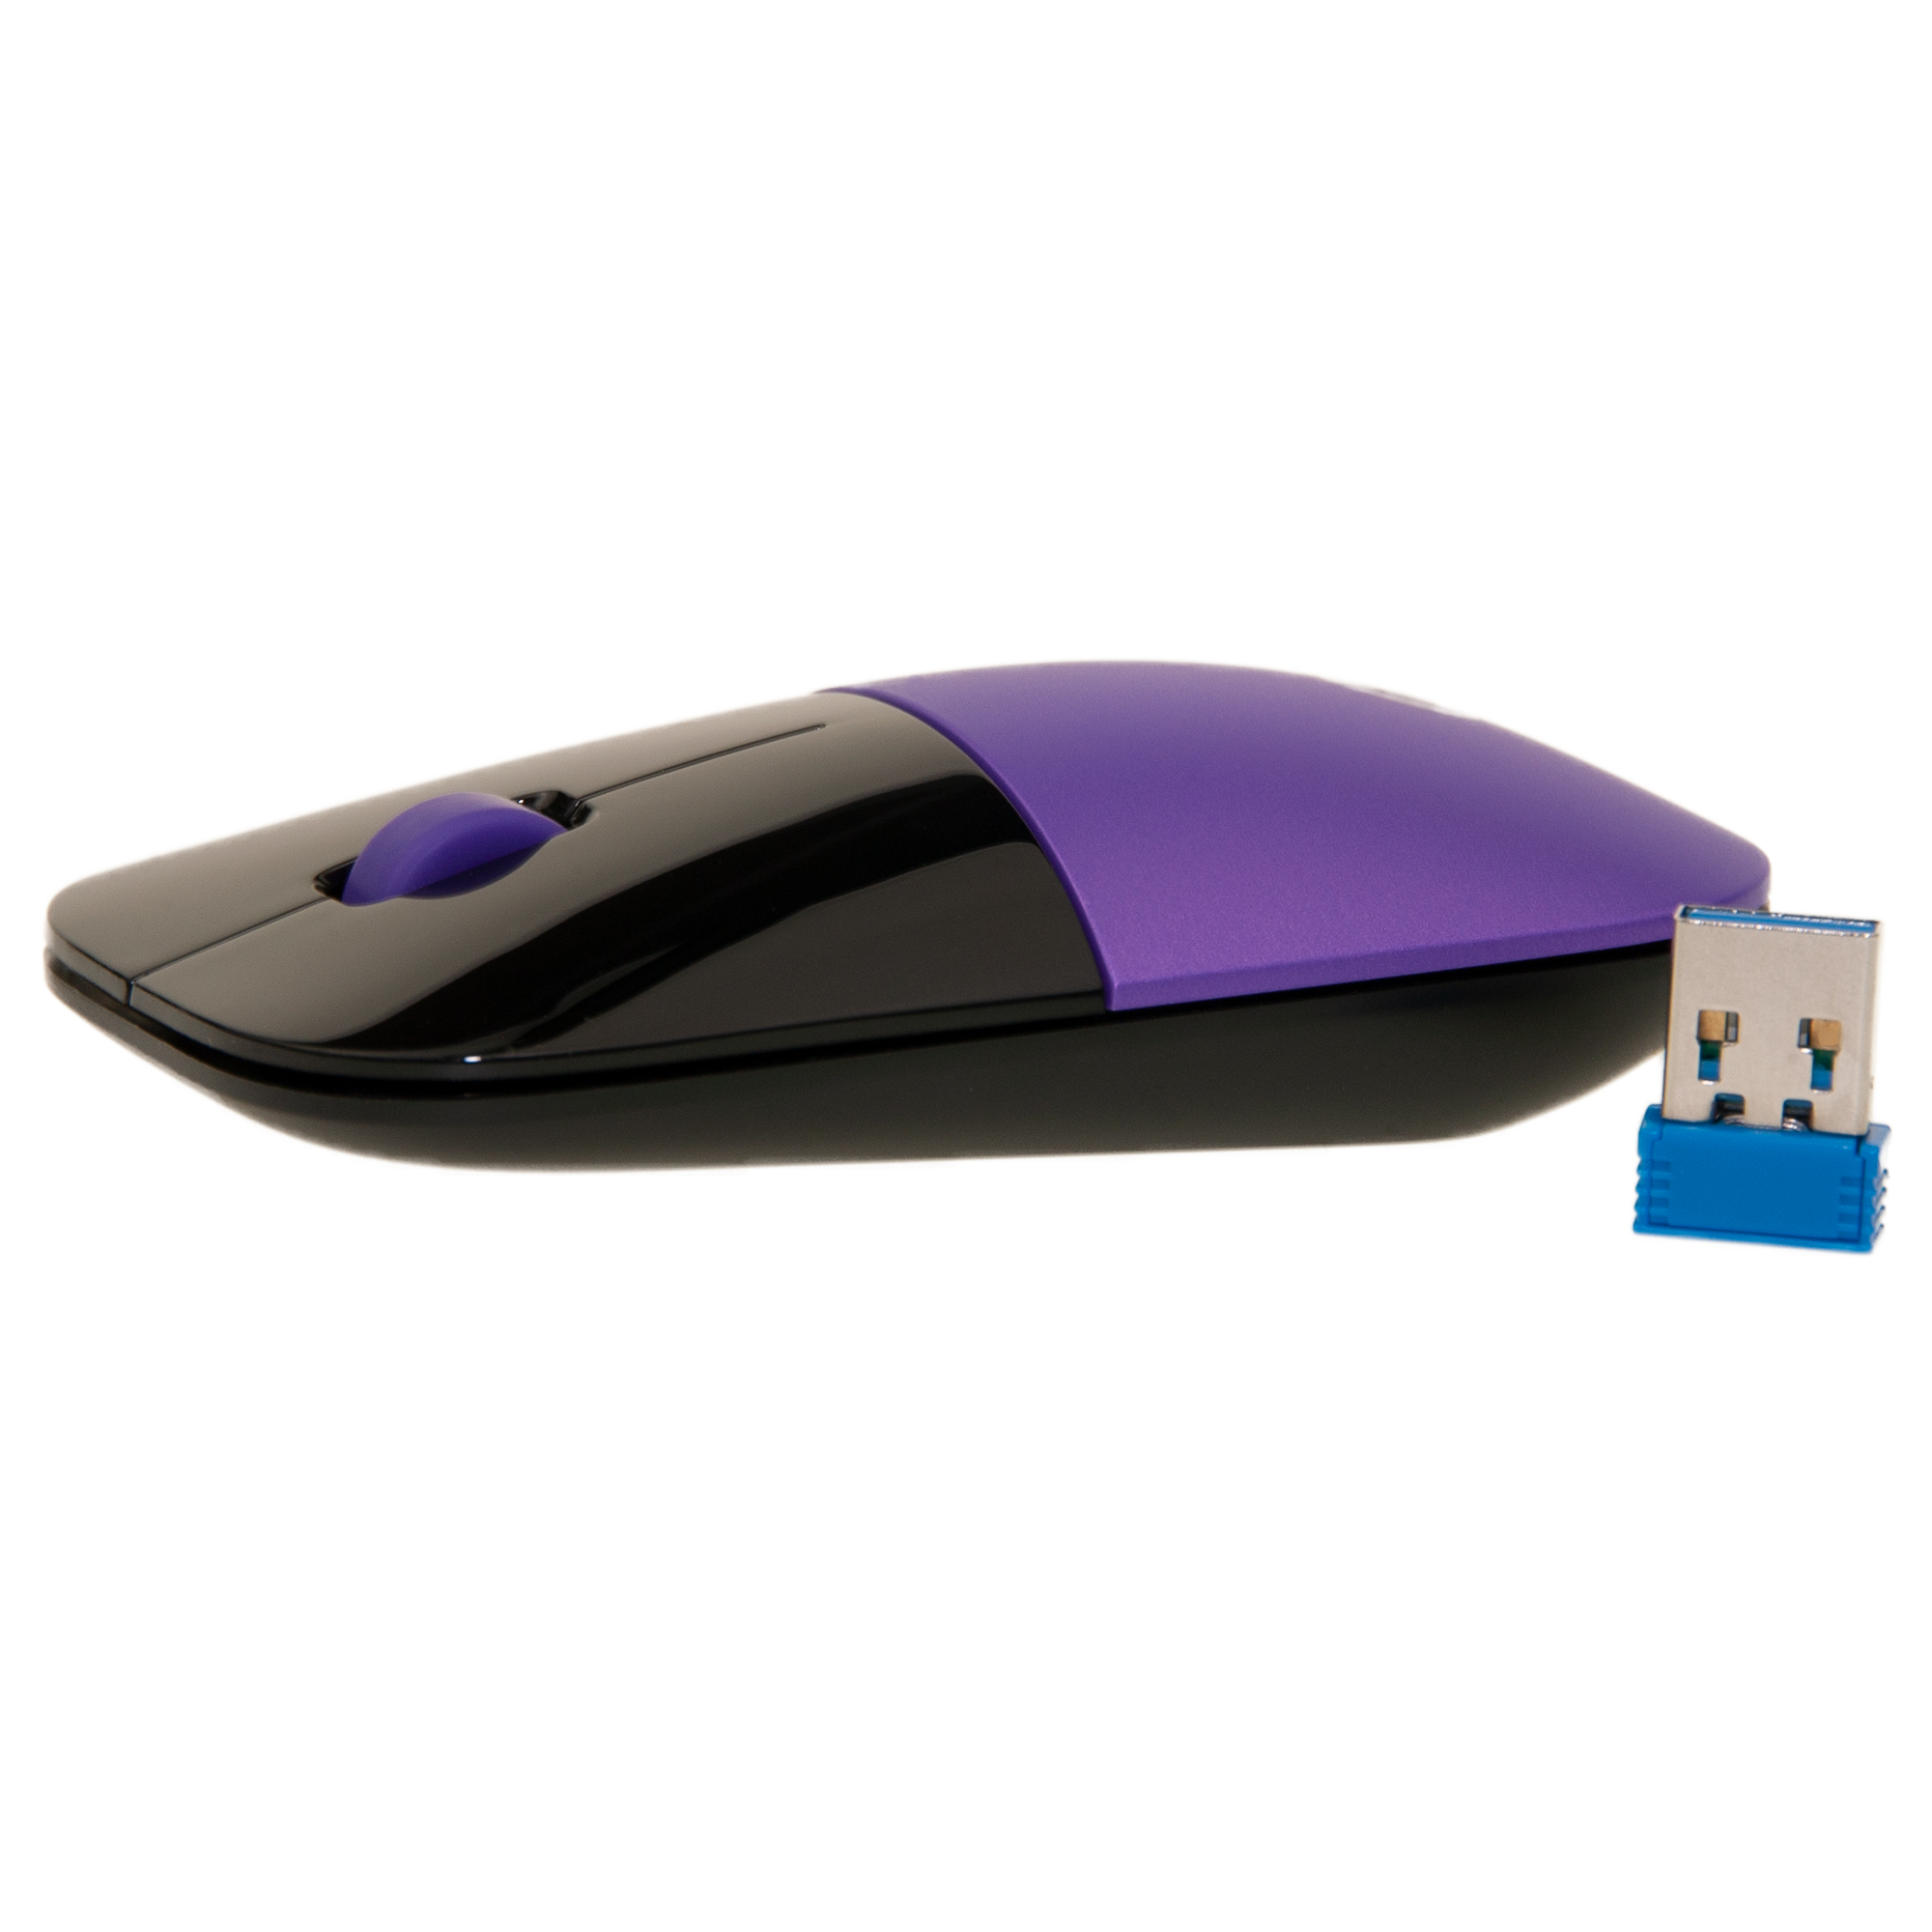 Purple HP Z3700 Wireless Mouse, Stylish Sleek Low Profile